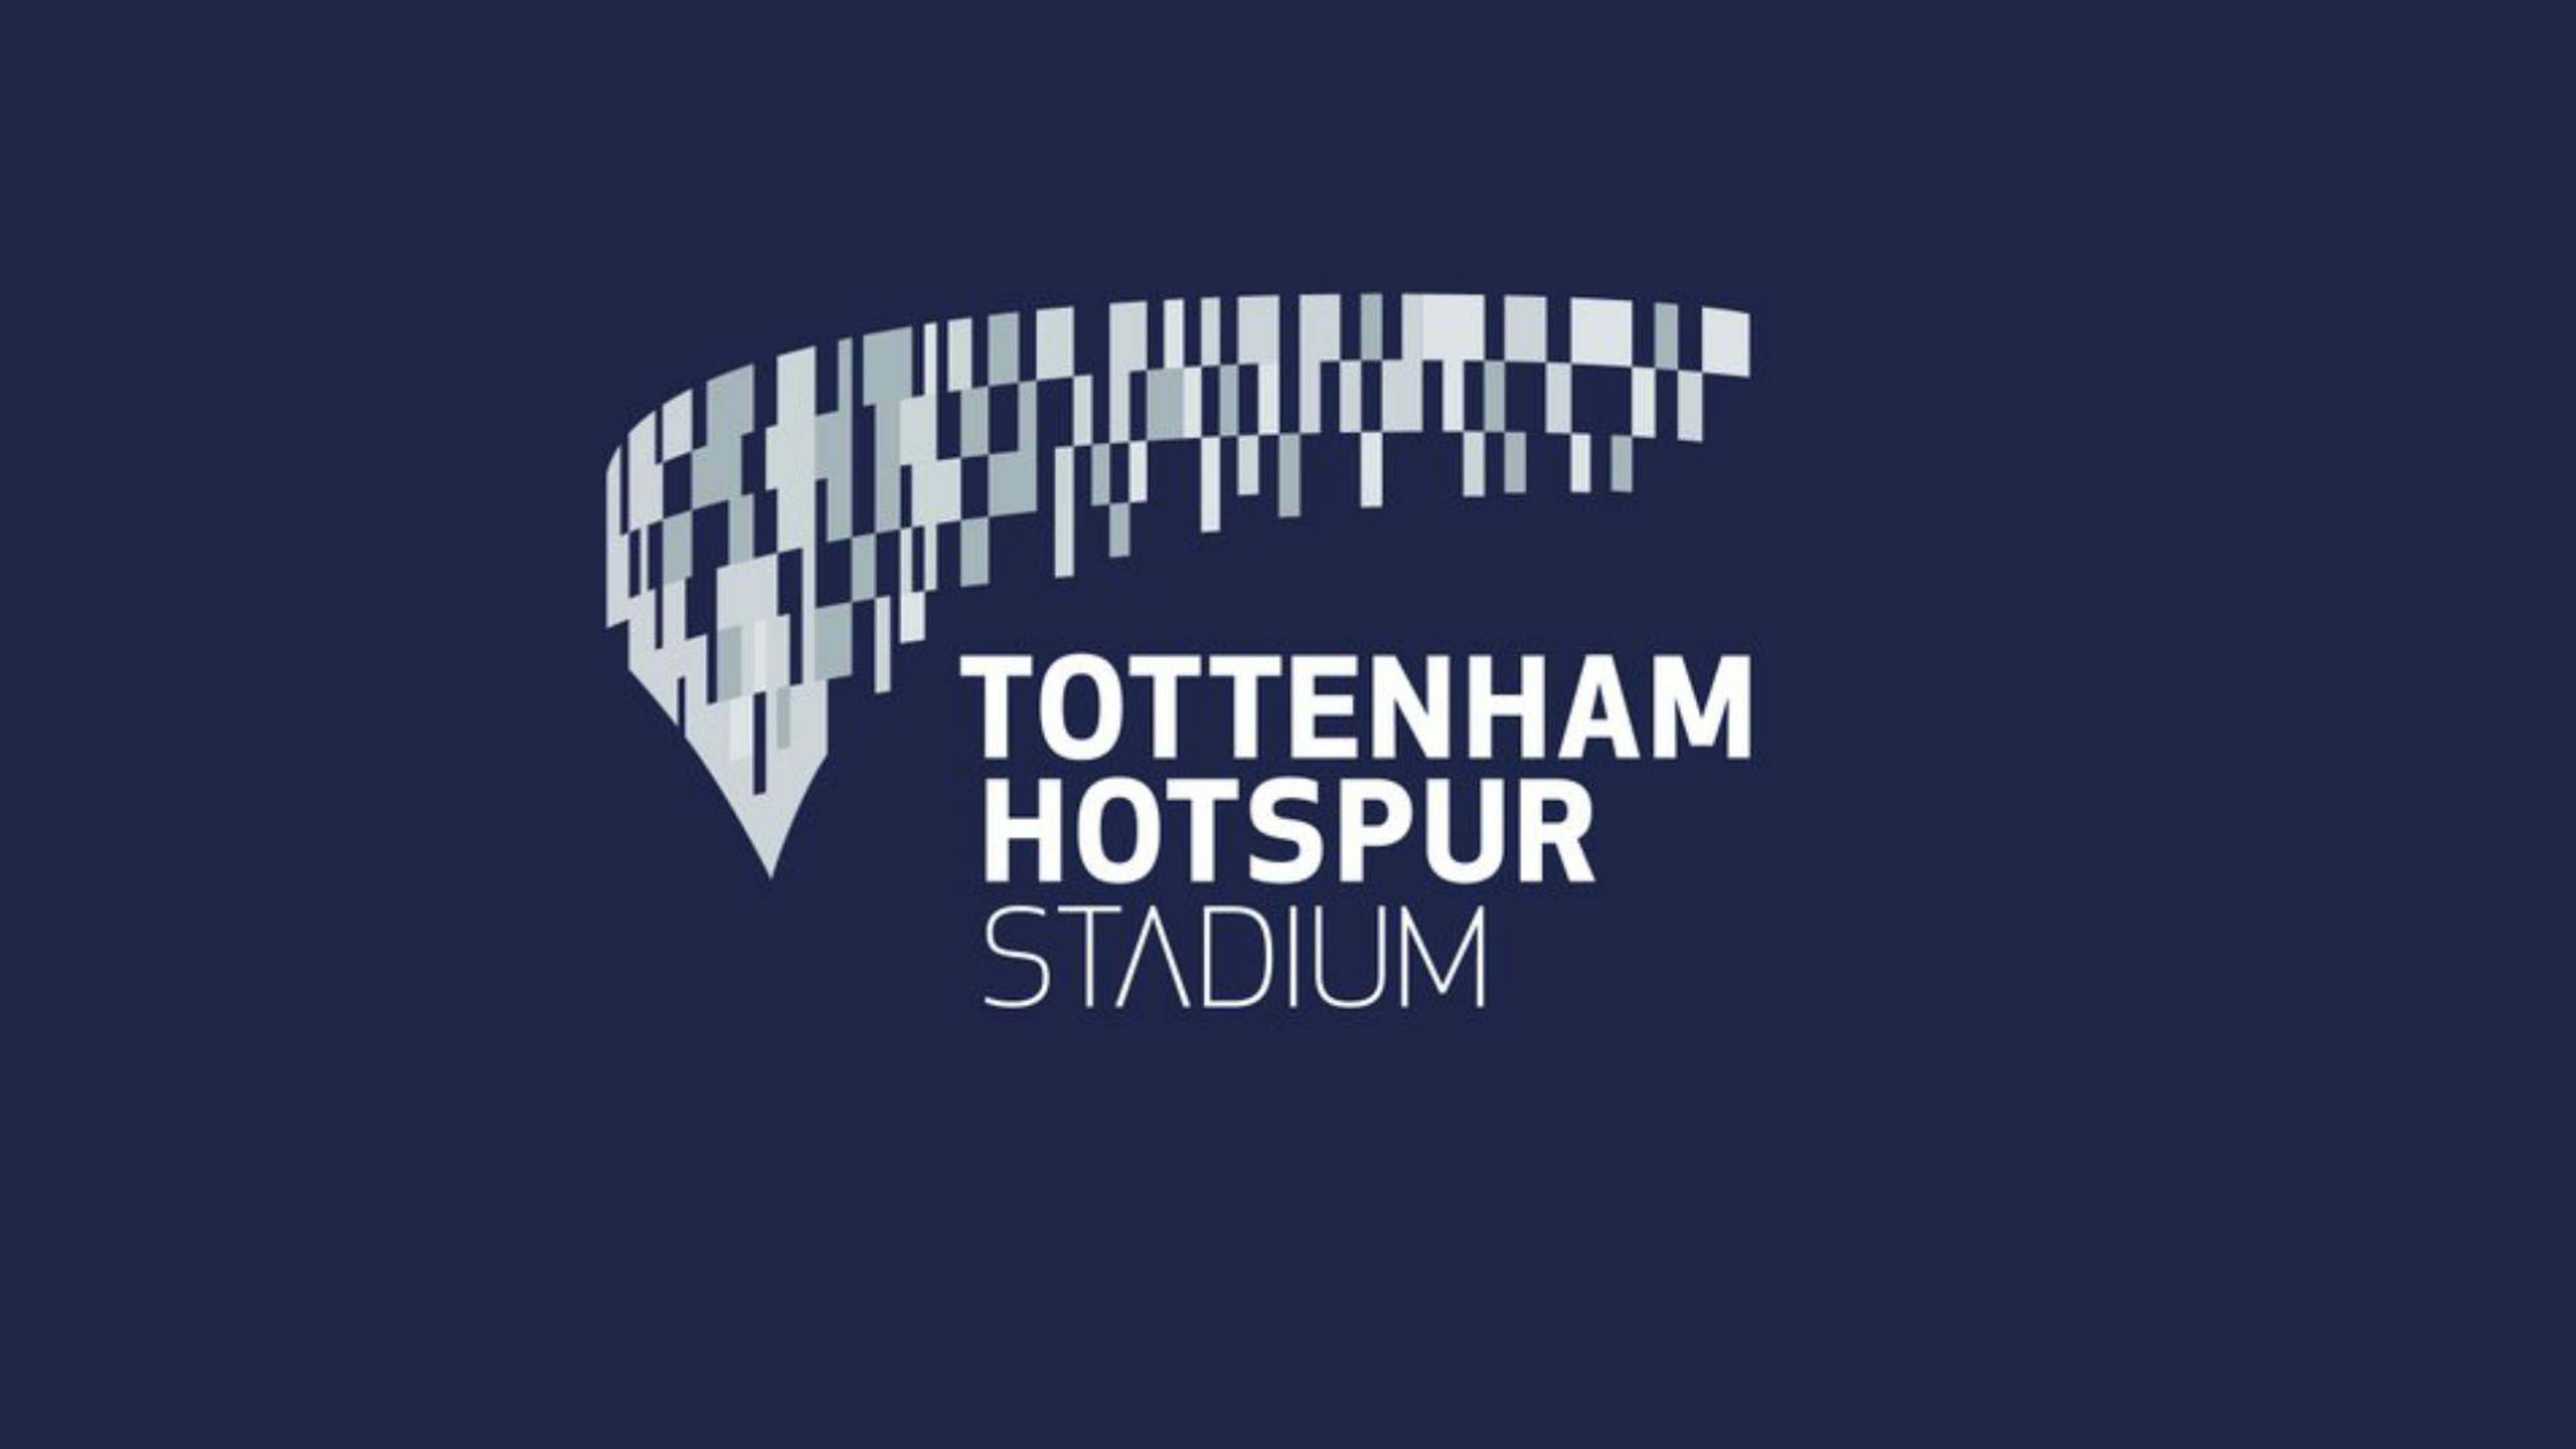 Tottenham Hotspur Stadium brand